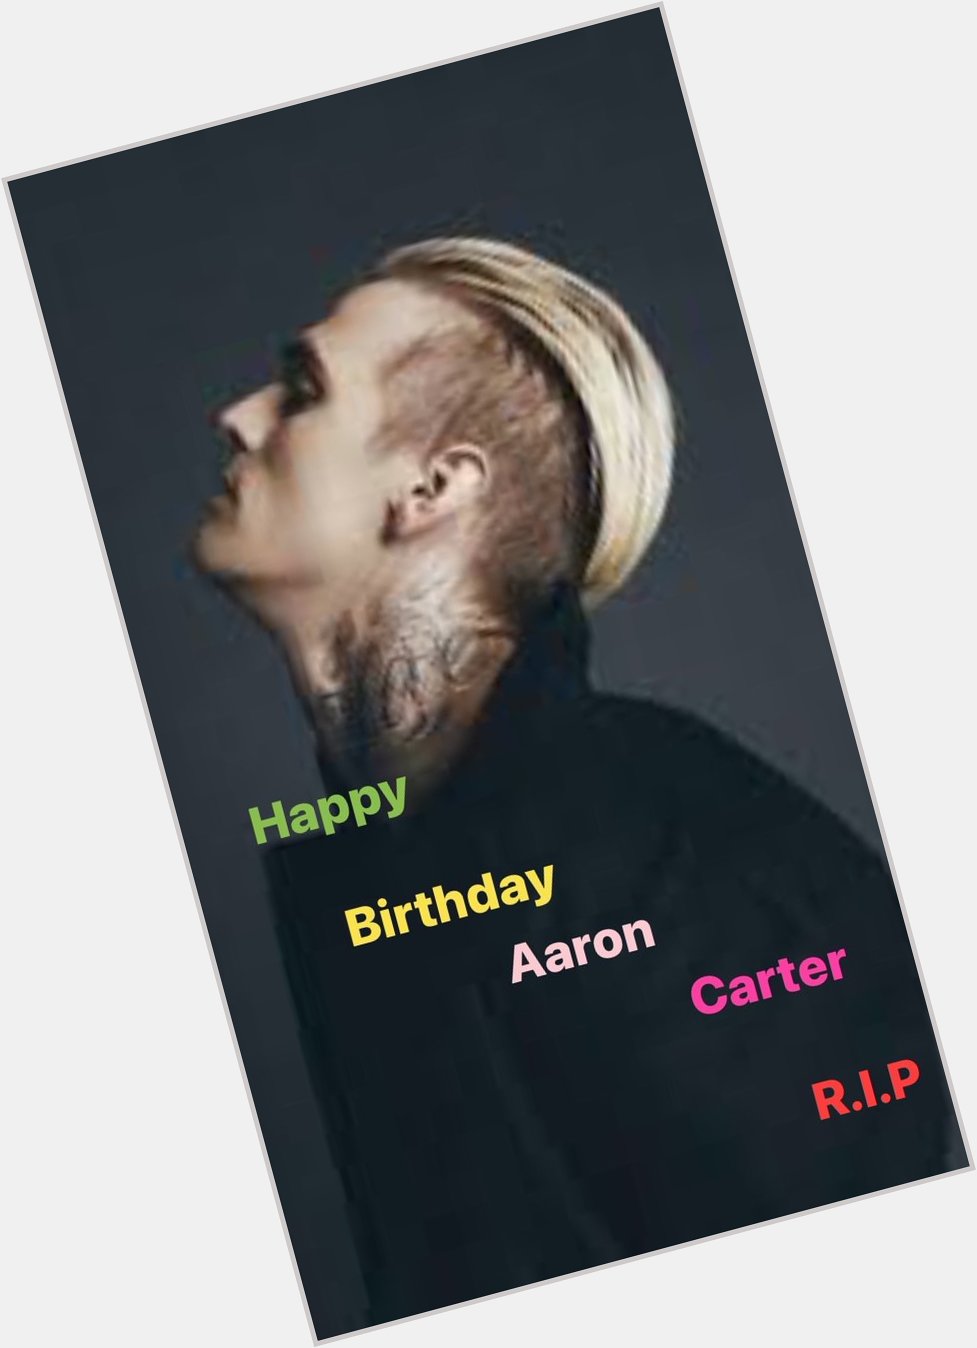 Happy Heaven birthday to Aaron Carter R.I.P Aaron Carter 